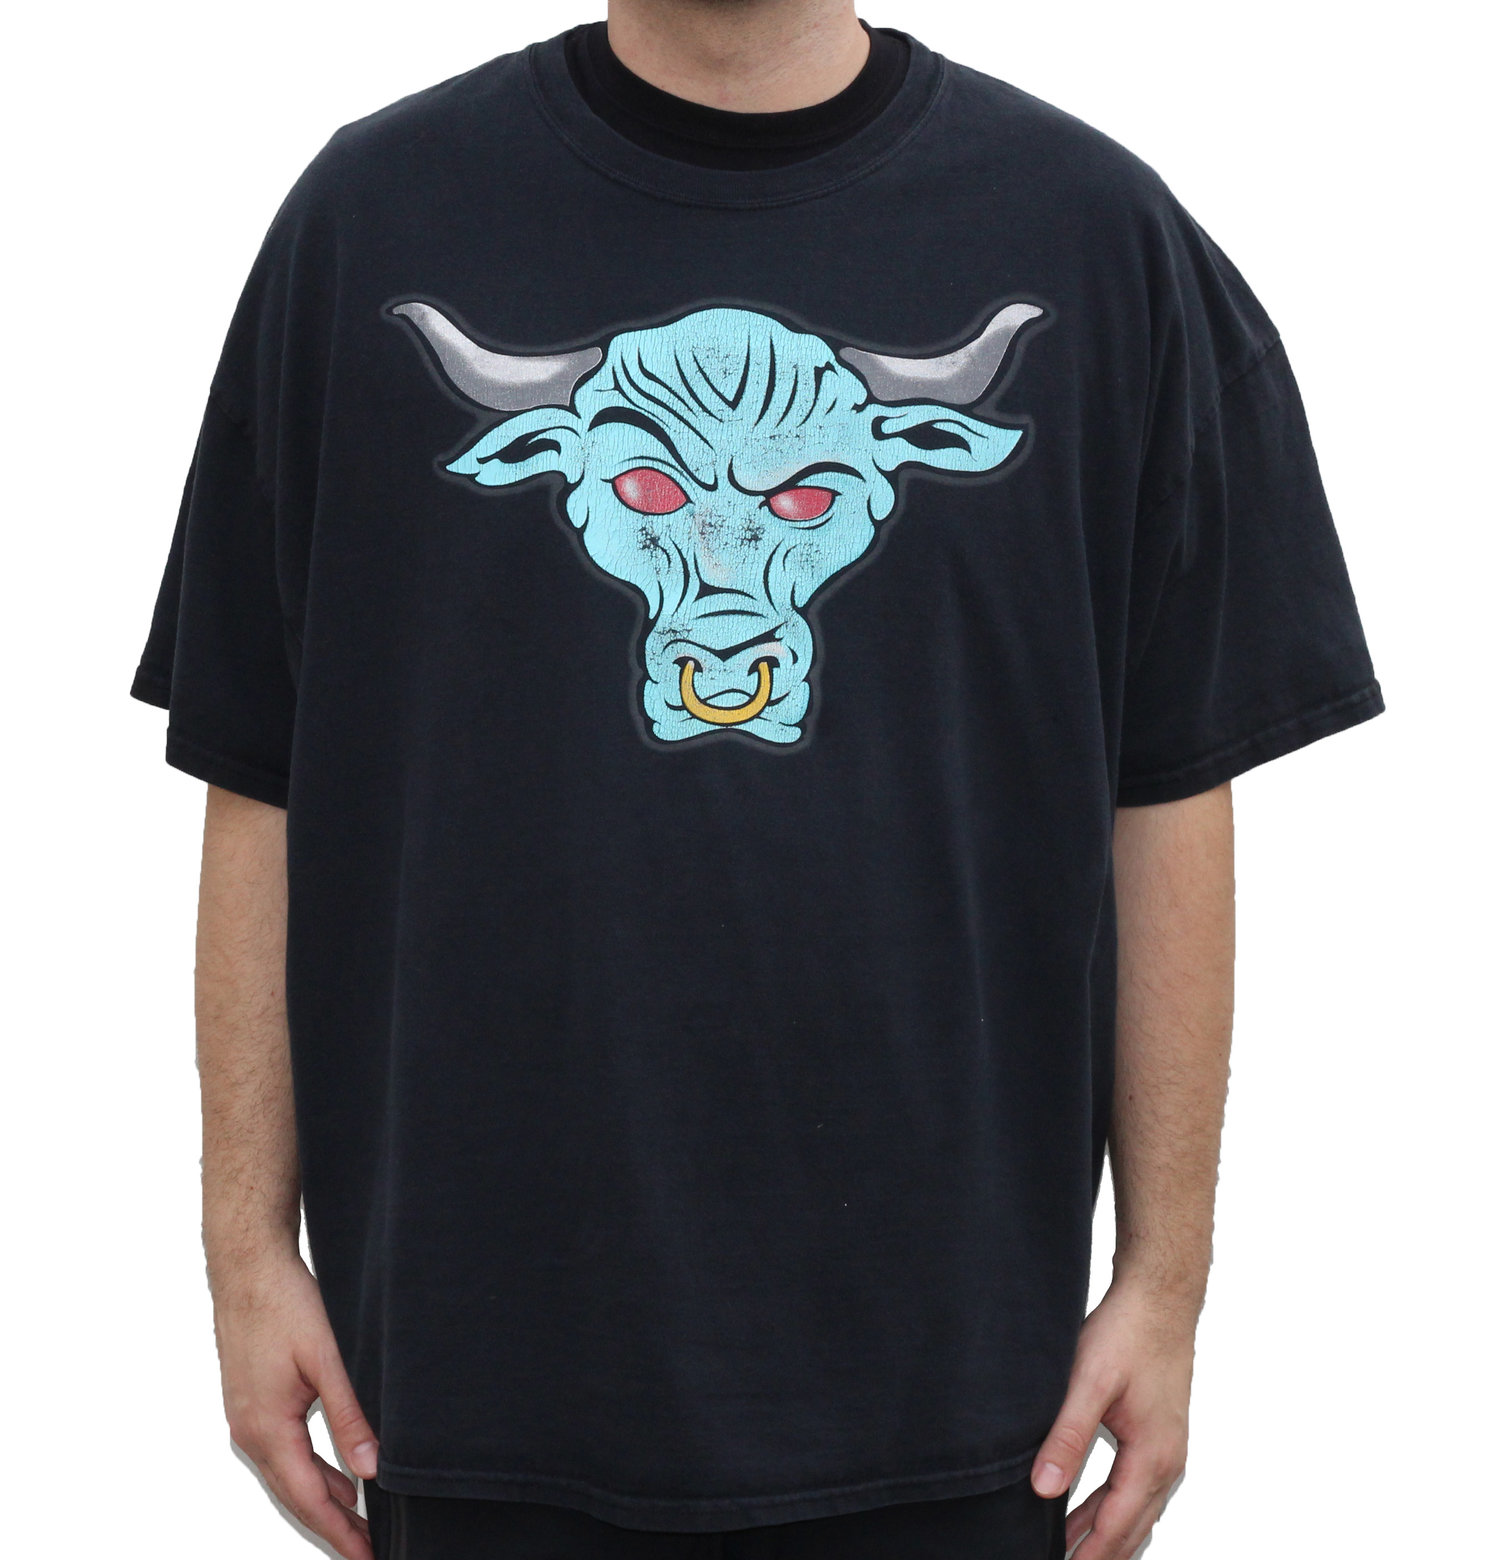 rock bull t shirt